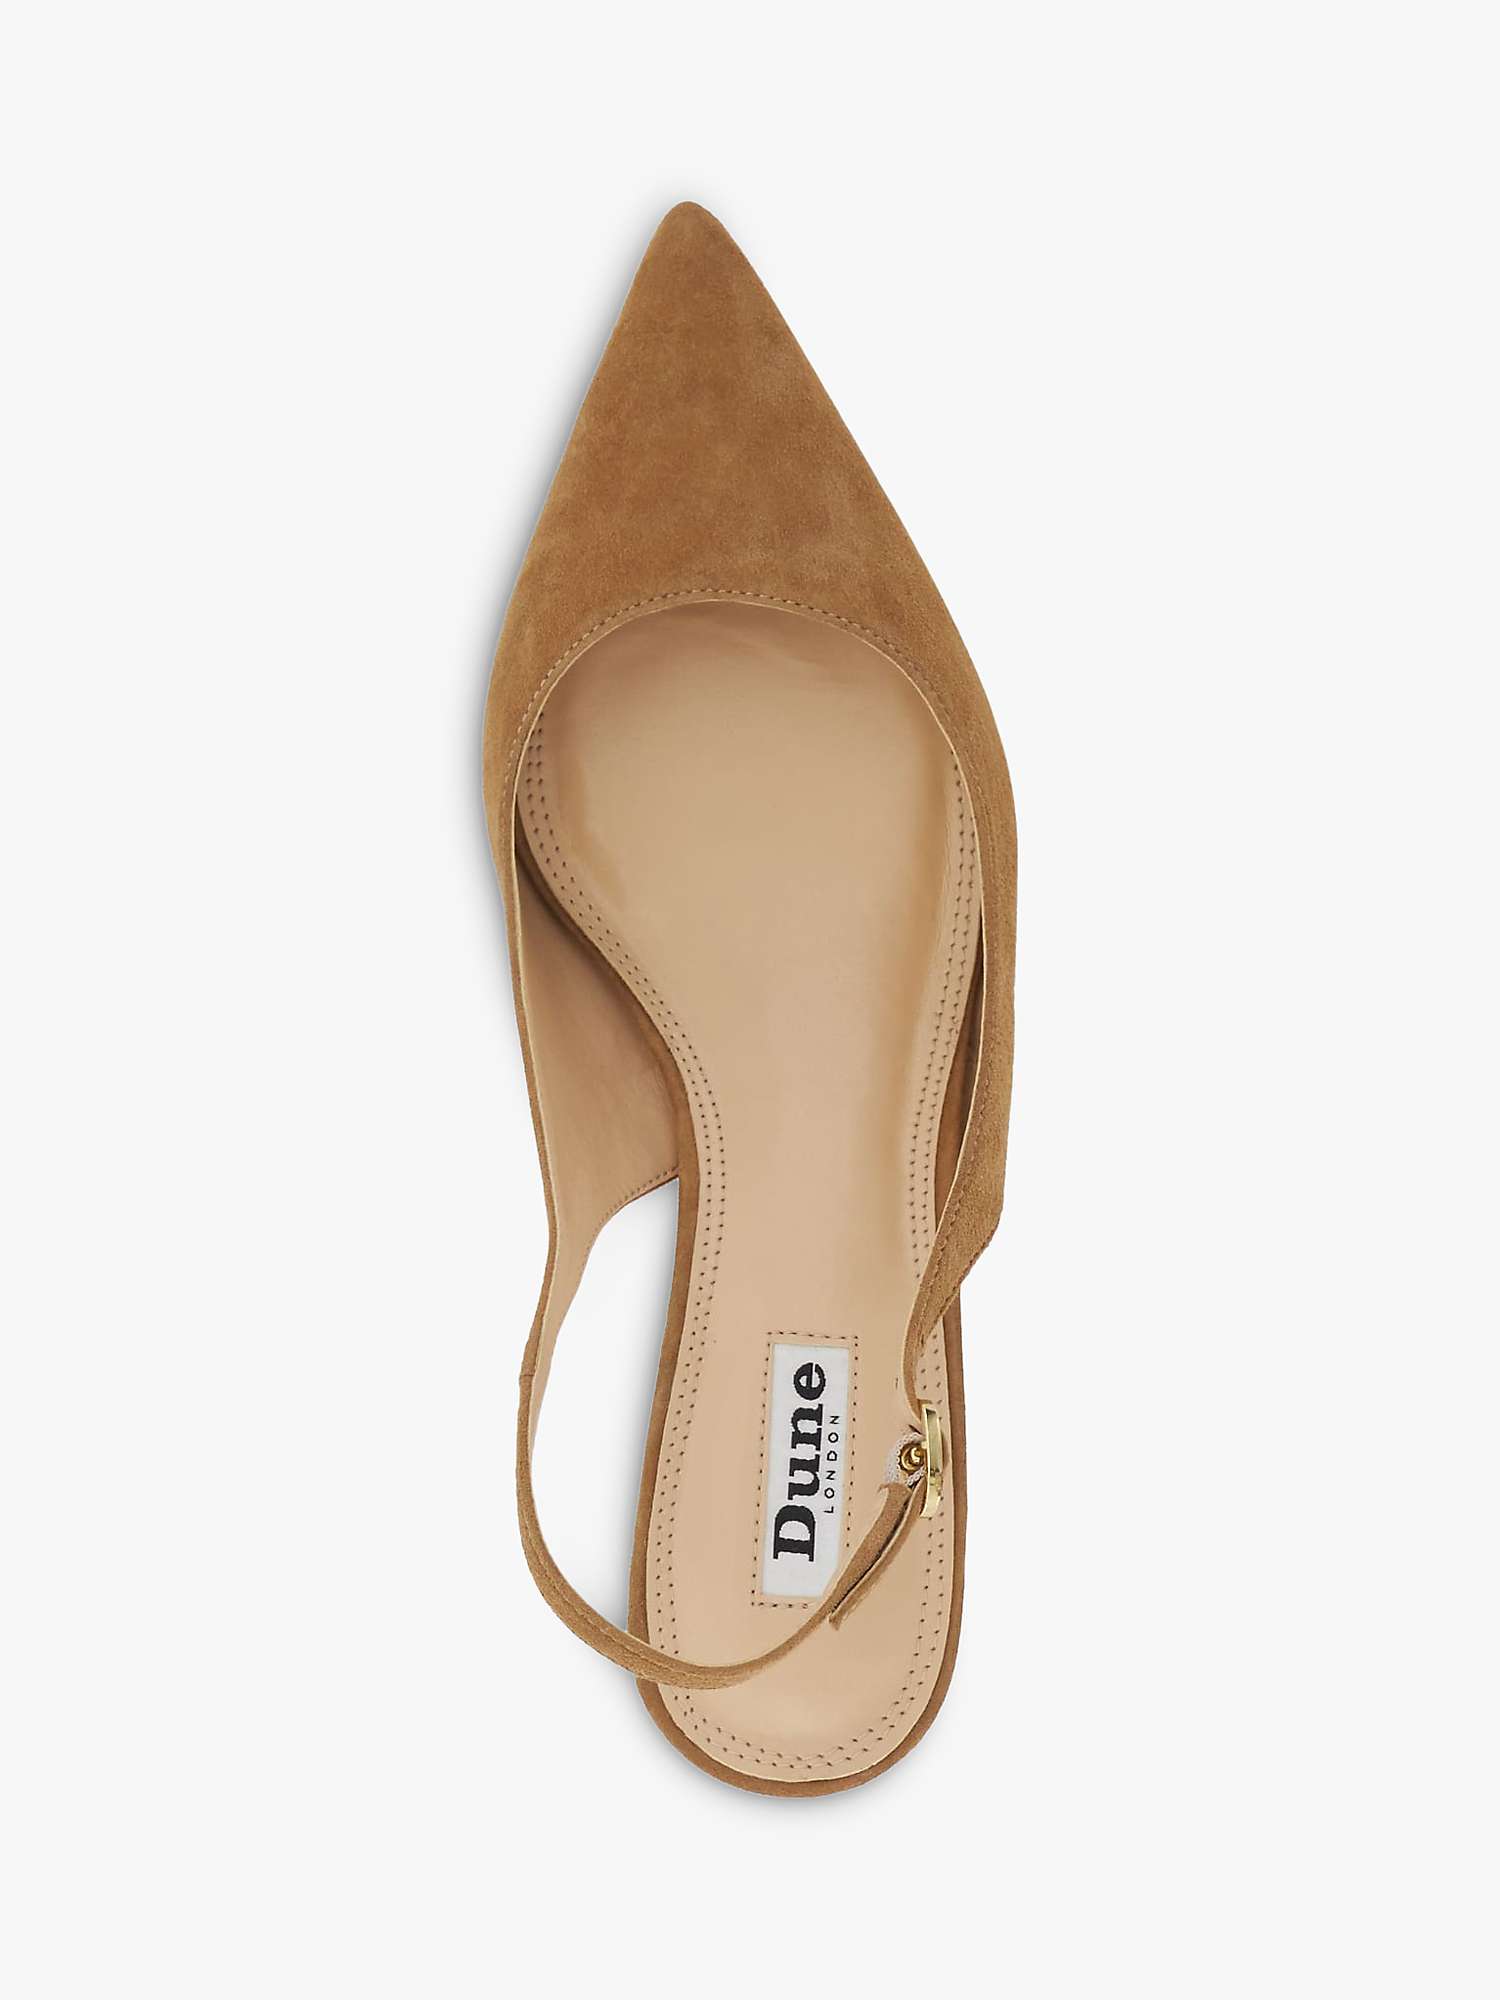 Buy Dune Celini Suede Slingback Court Shoes, Camel Online at johnlewis.com